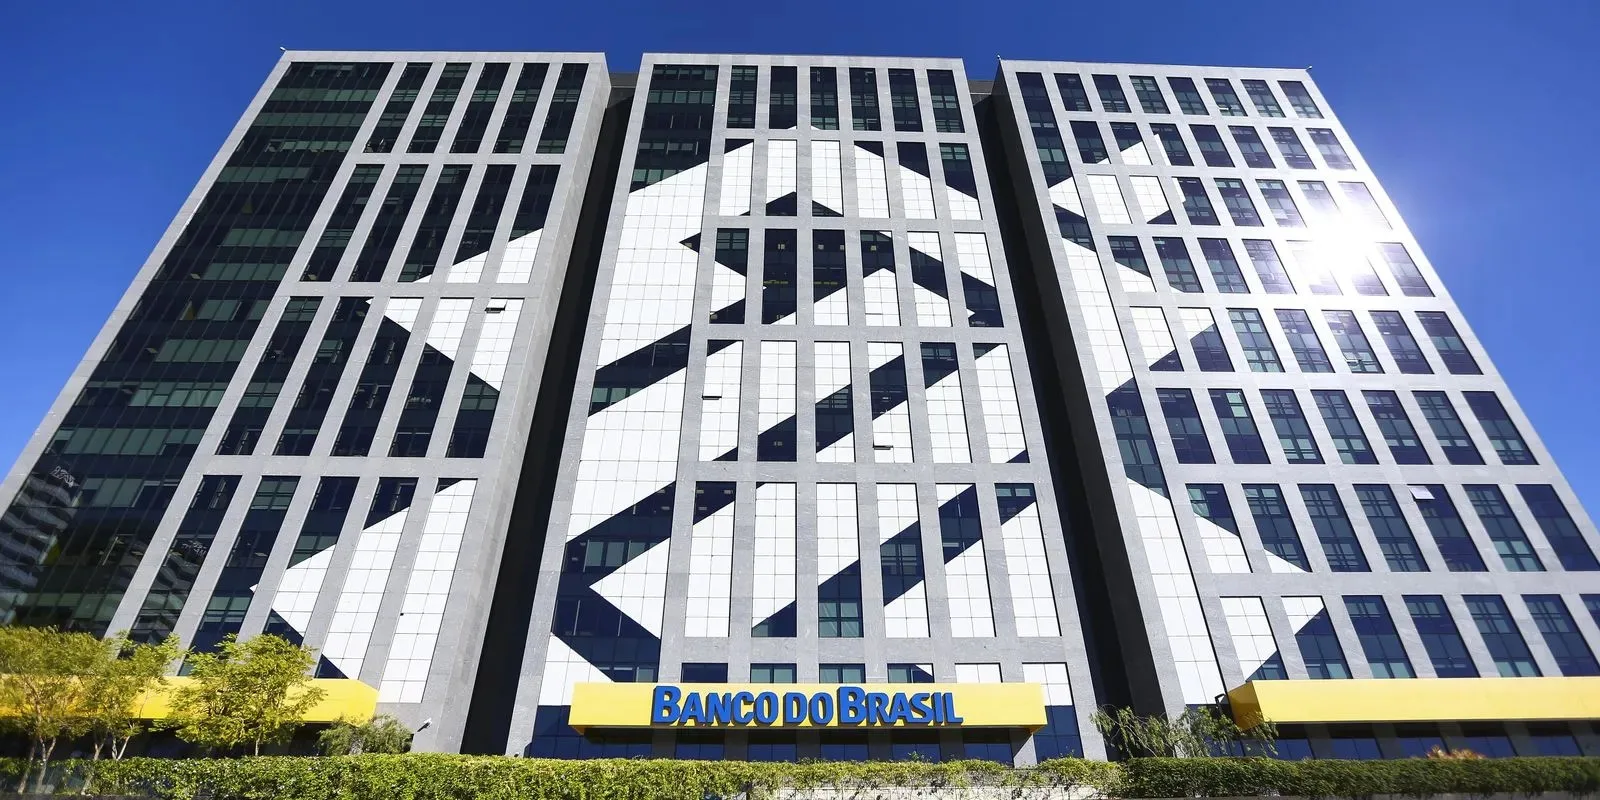 Agenda de dividendos de junho conta com R$ 3,7 bi do Banco do Brasil (BBAS3) e ‘extraordinário’ da Petrobras (PETR4)